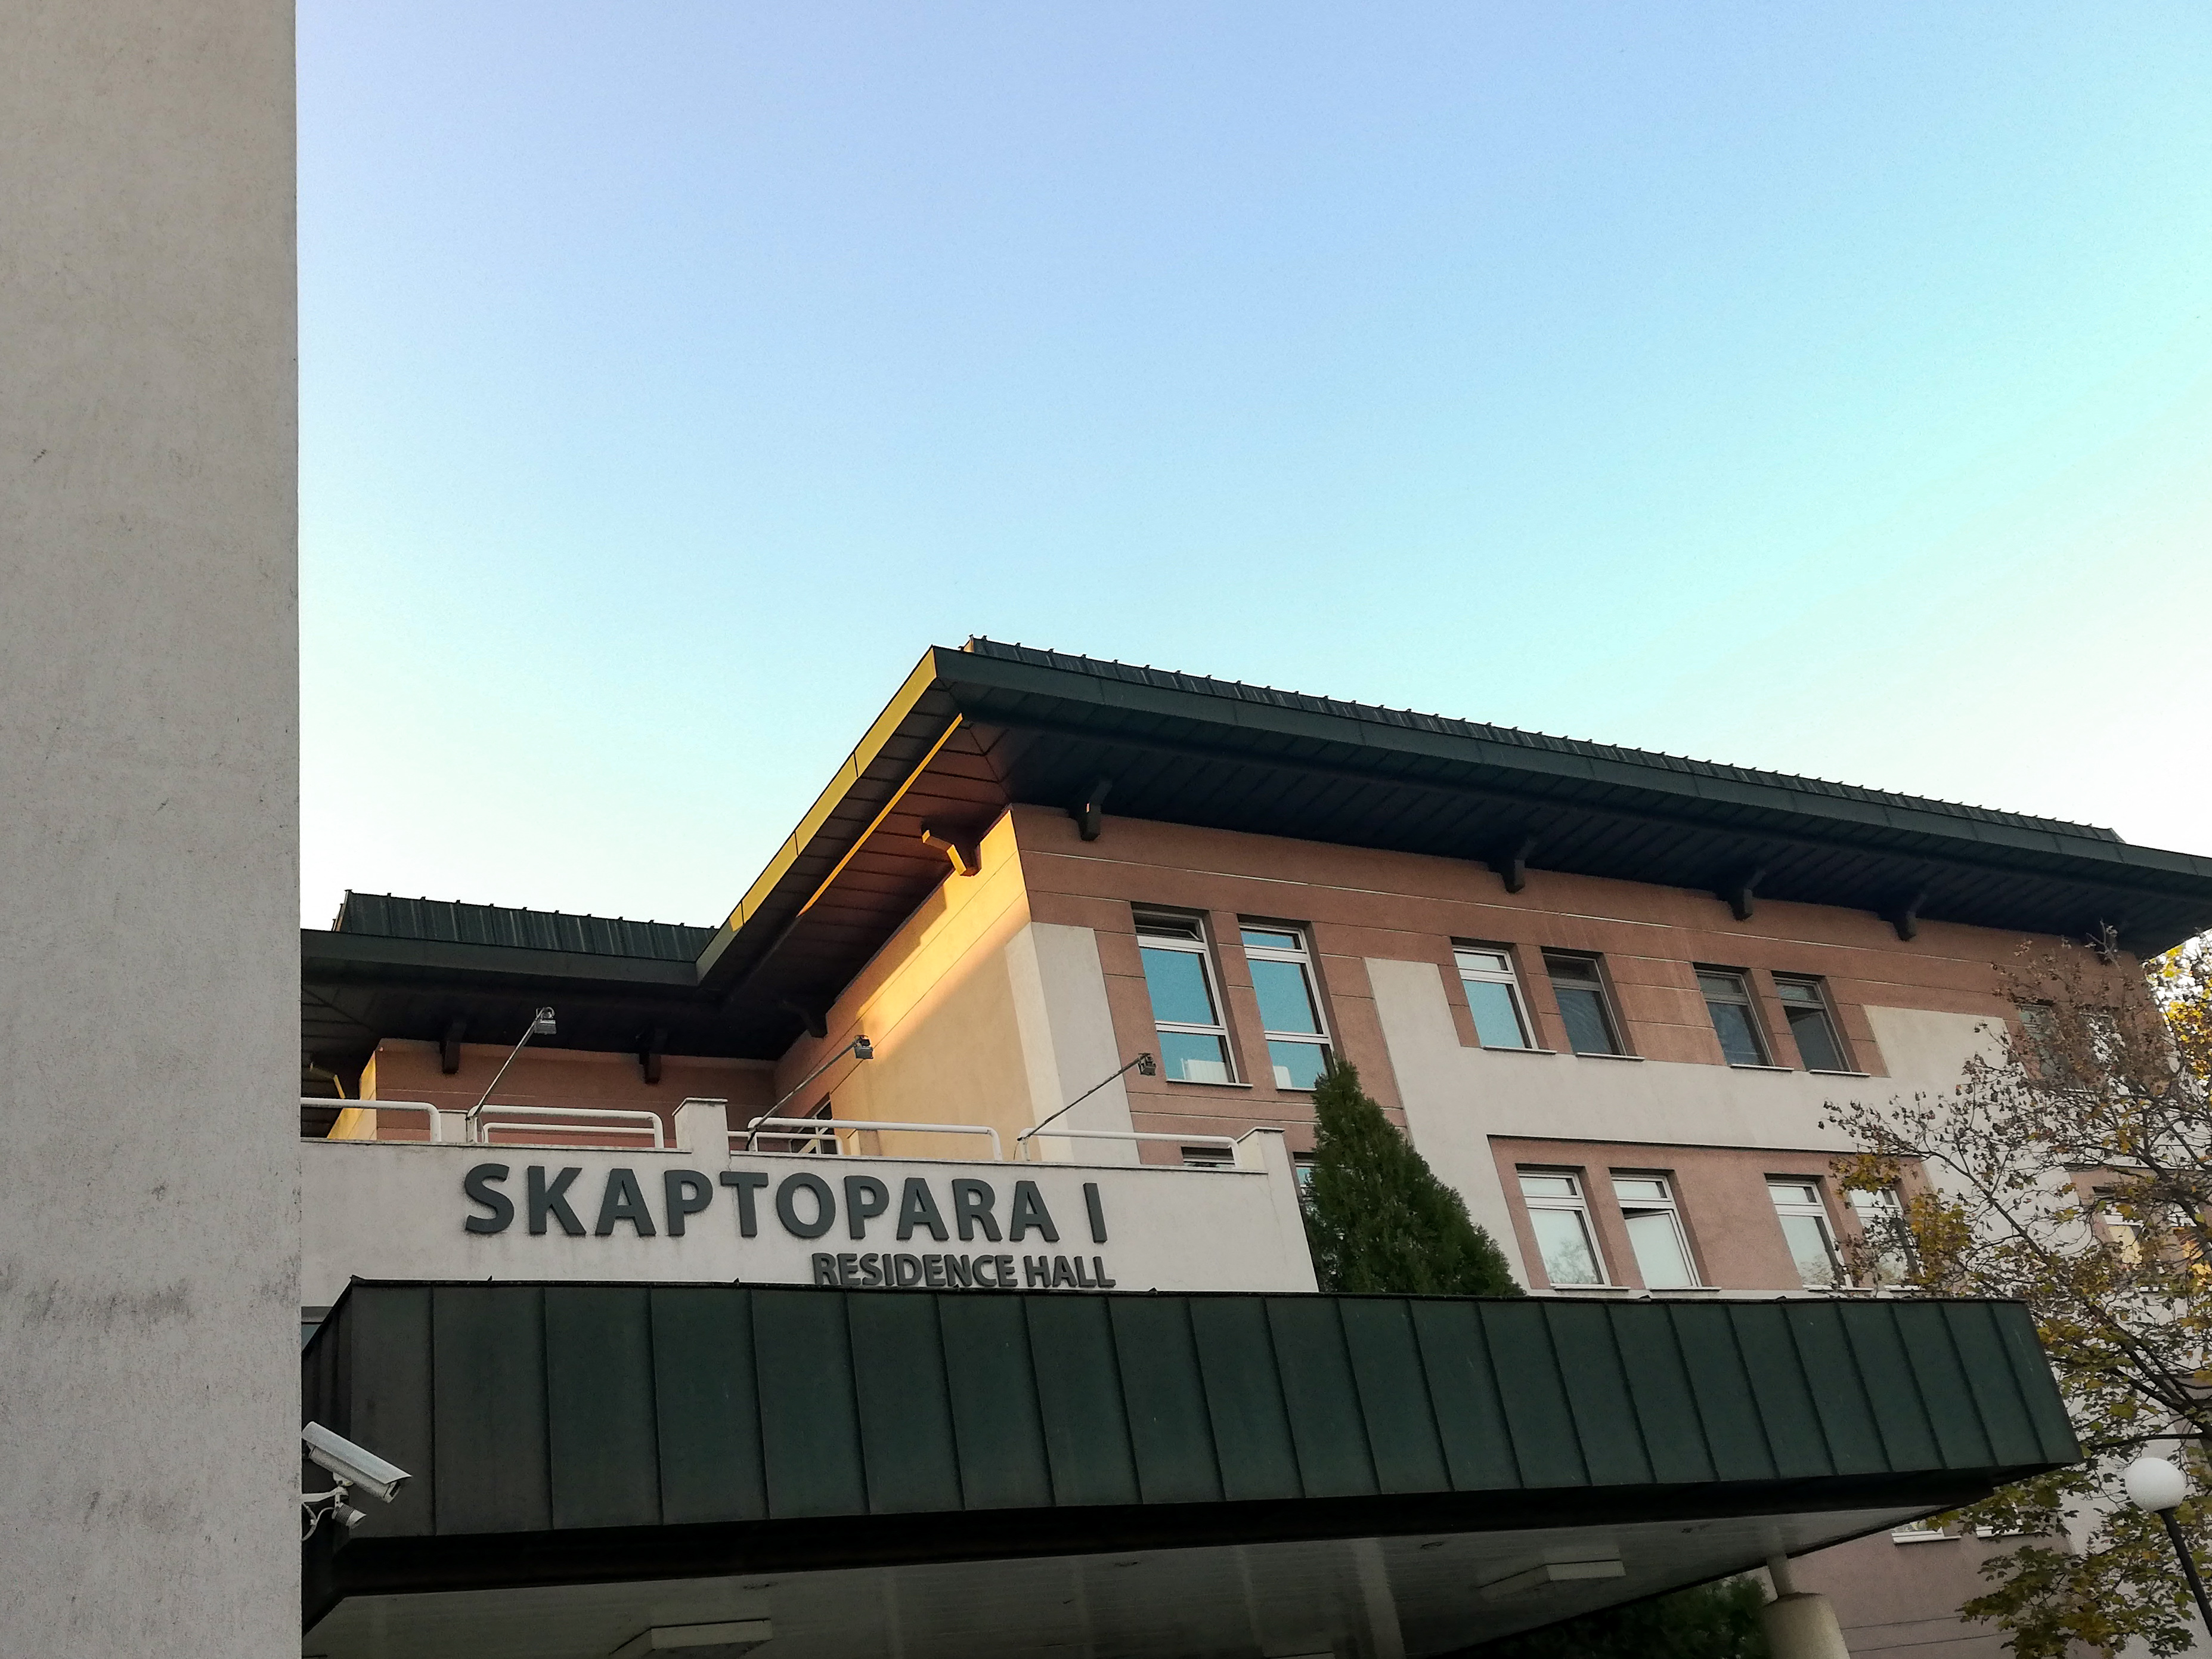 Skaptopara I Residence Hall, AUBG Campus. Photo courtesy of Bianka Deyanova.